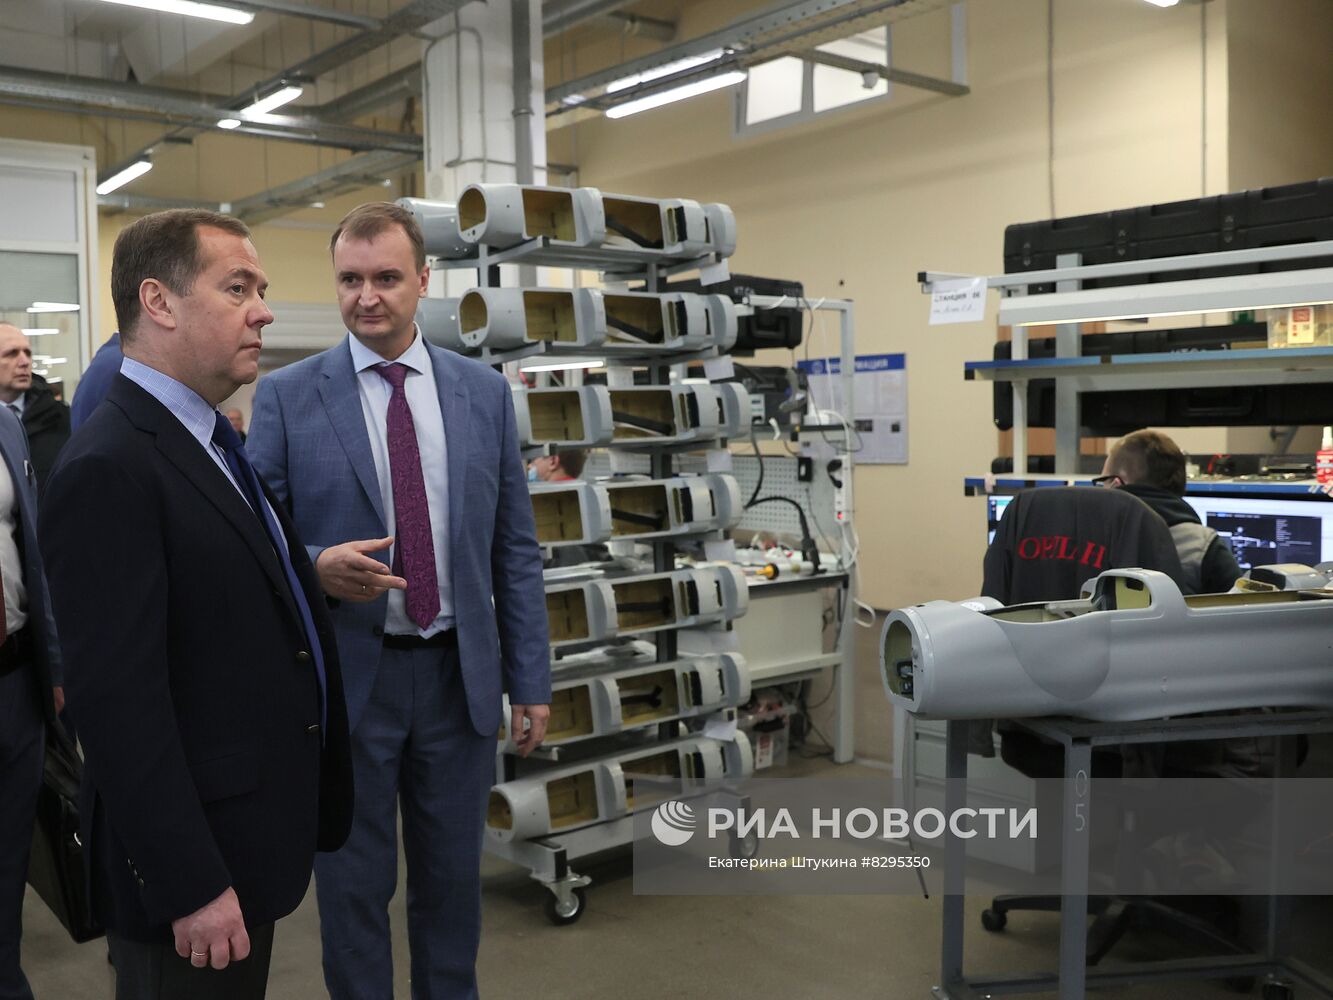 Зампред Совета безопасности РФ Д. Медведев  посетил "Специальный технологический центр" в Санкт-Петербурге